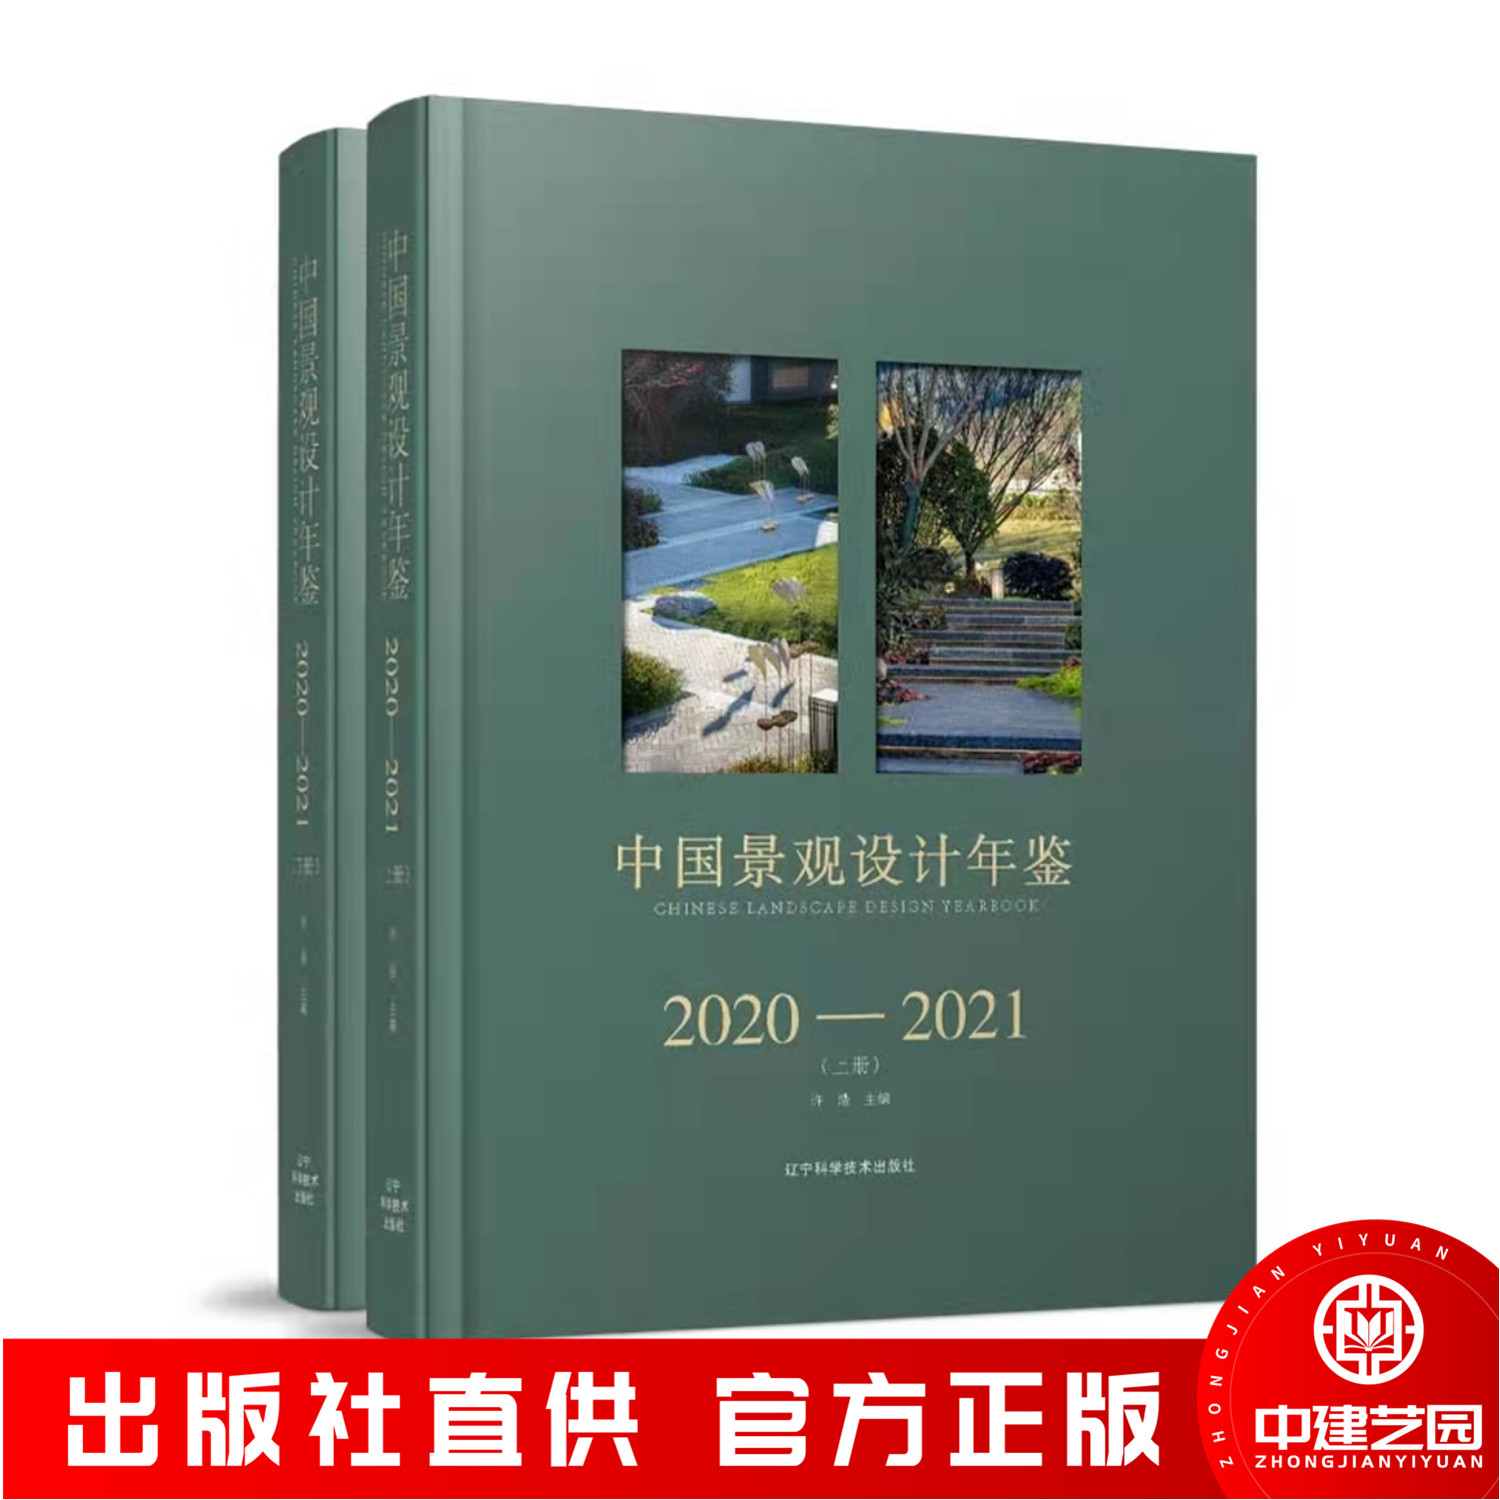 中国景观设计年鉴2020-2021 公园城市广场街道商业购物酒店办公大楼旅游度假区楼盘住宅小区风景园林环境设计参考书籍